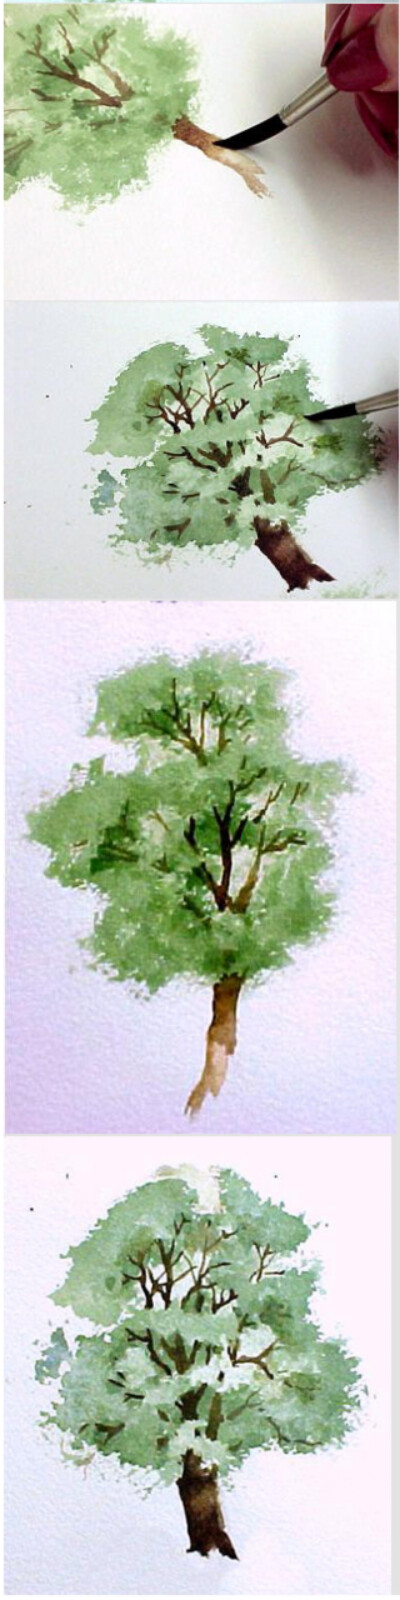 水彩画树示范教程2